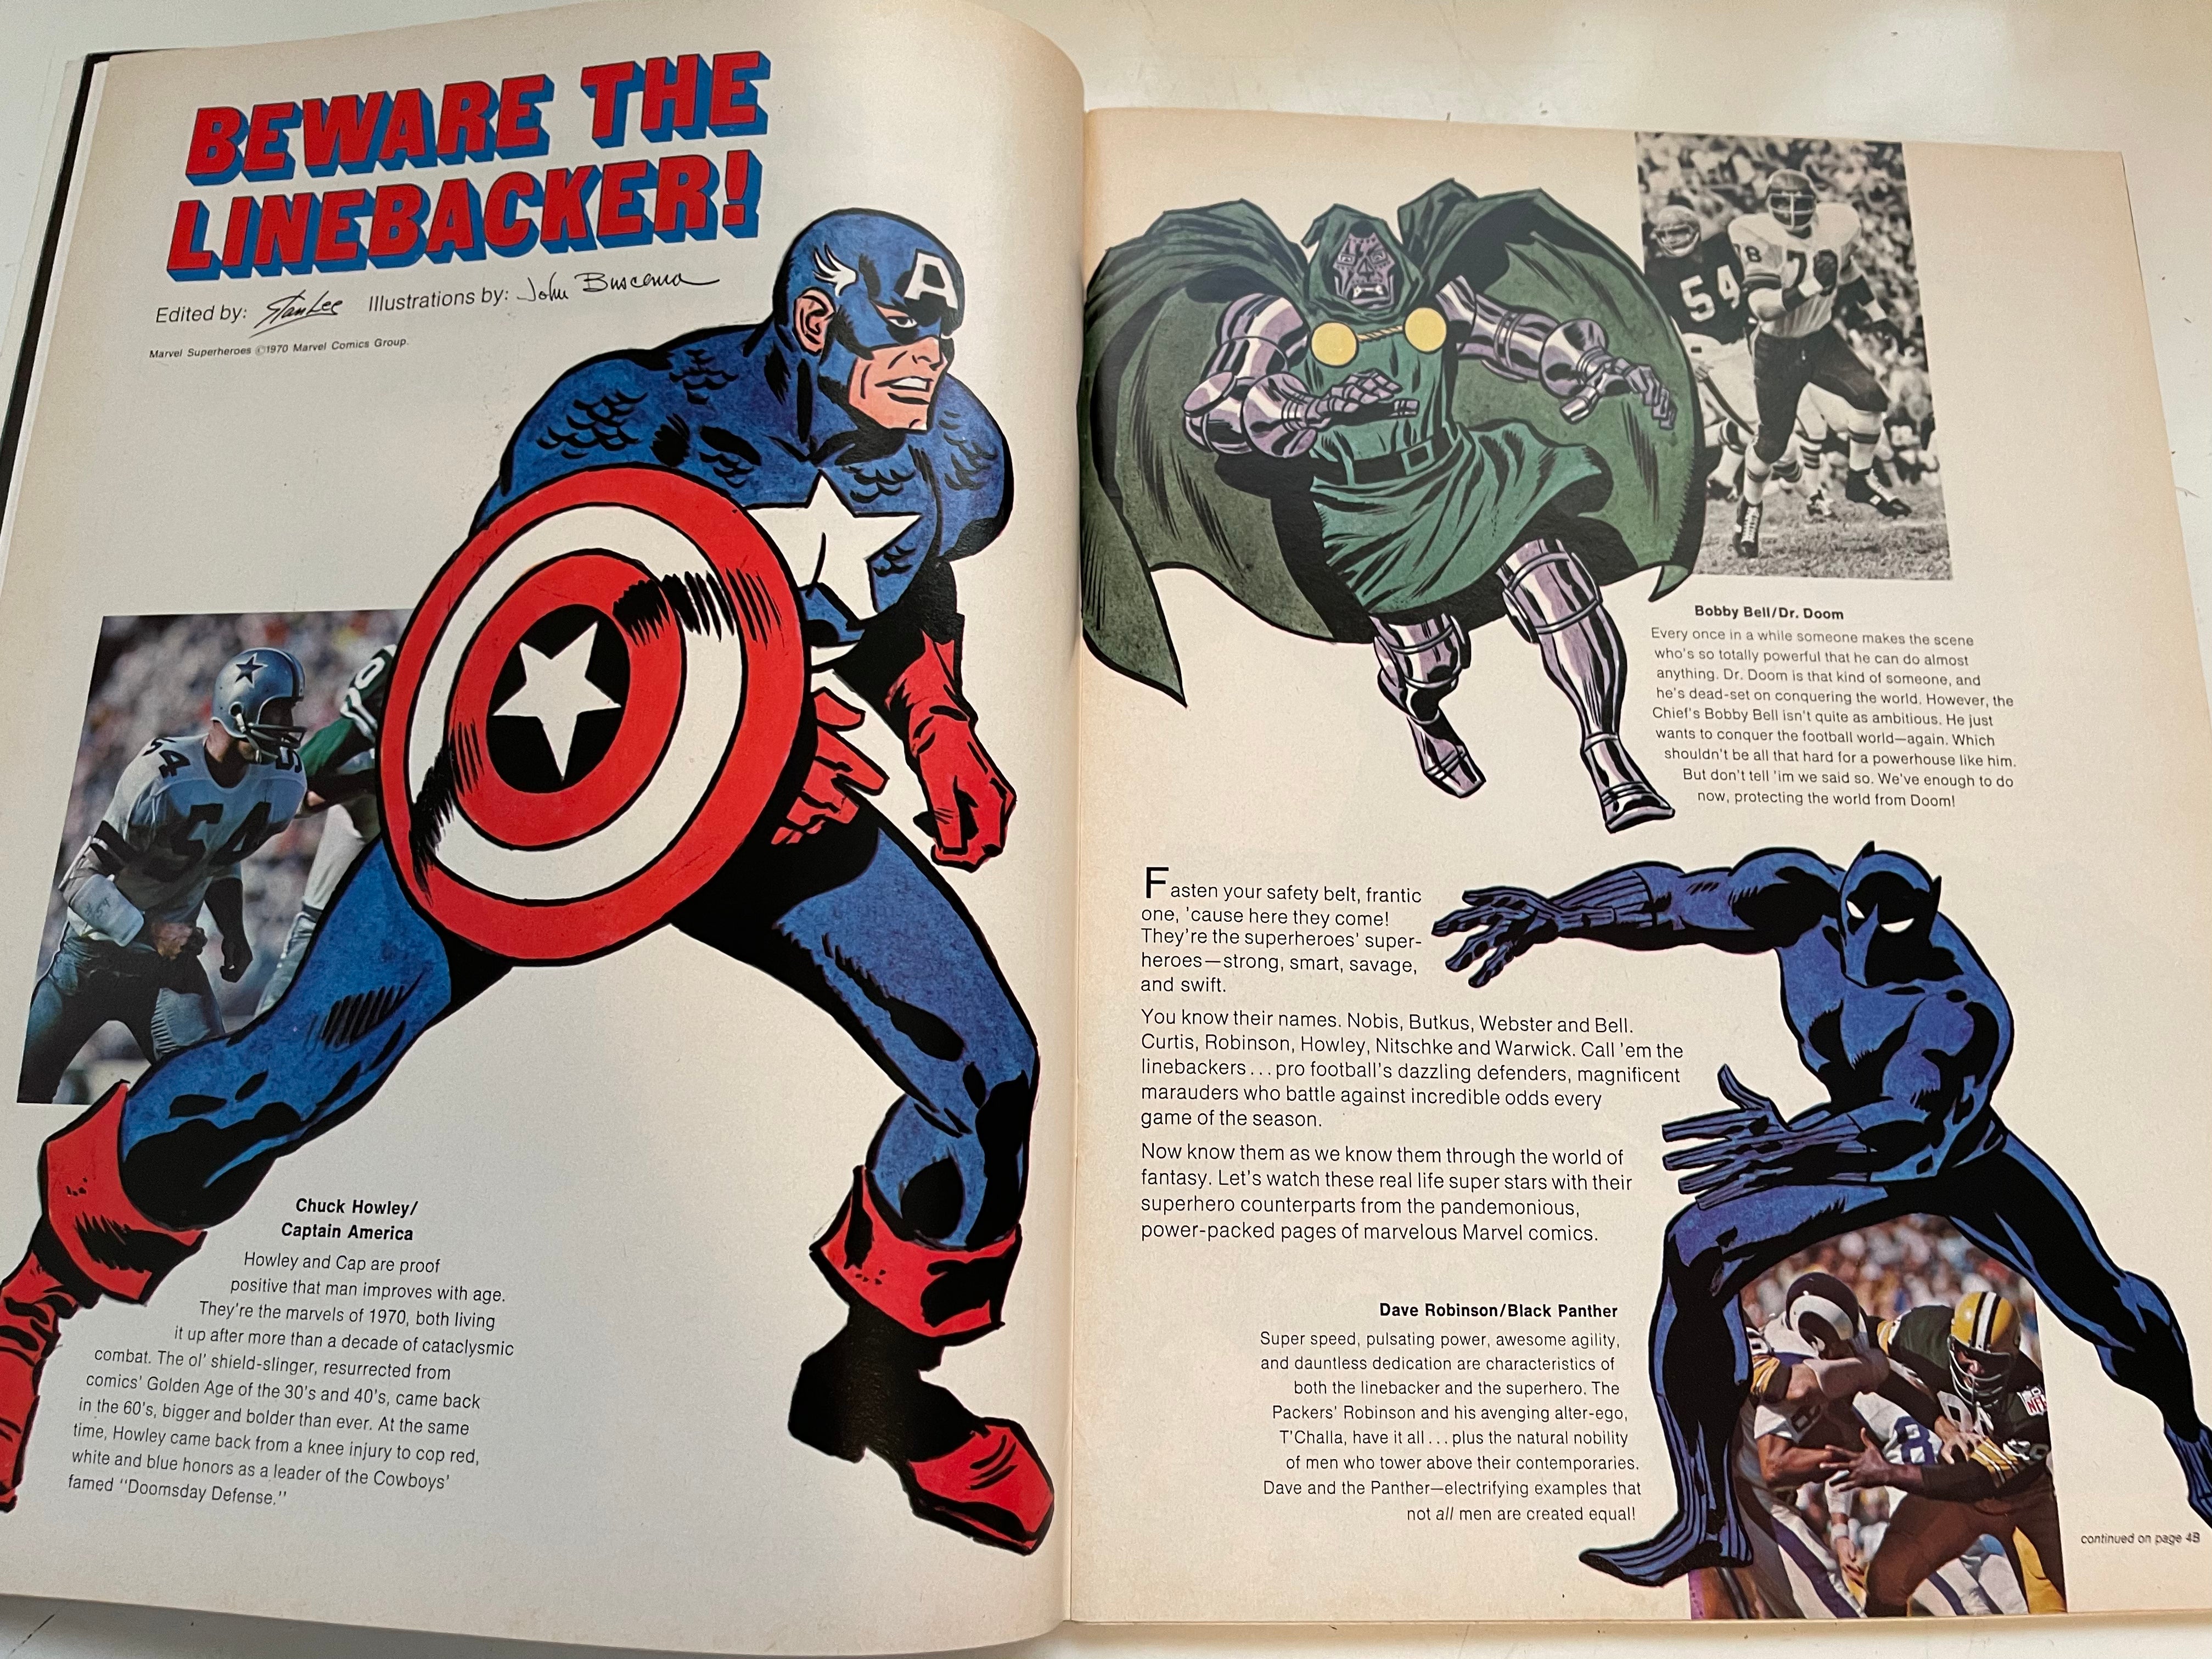 Buffalo Bills vs Jets football program with Marvel comics characters 1970